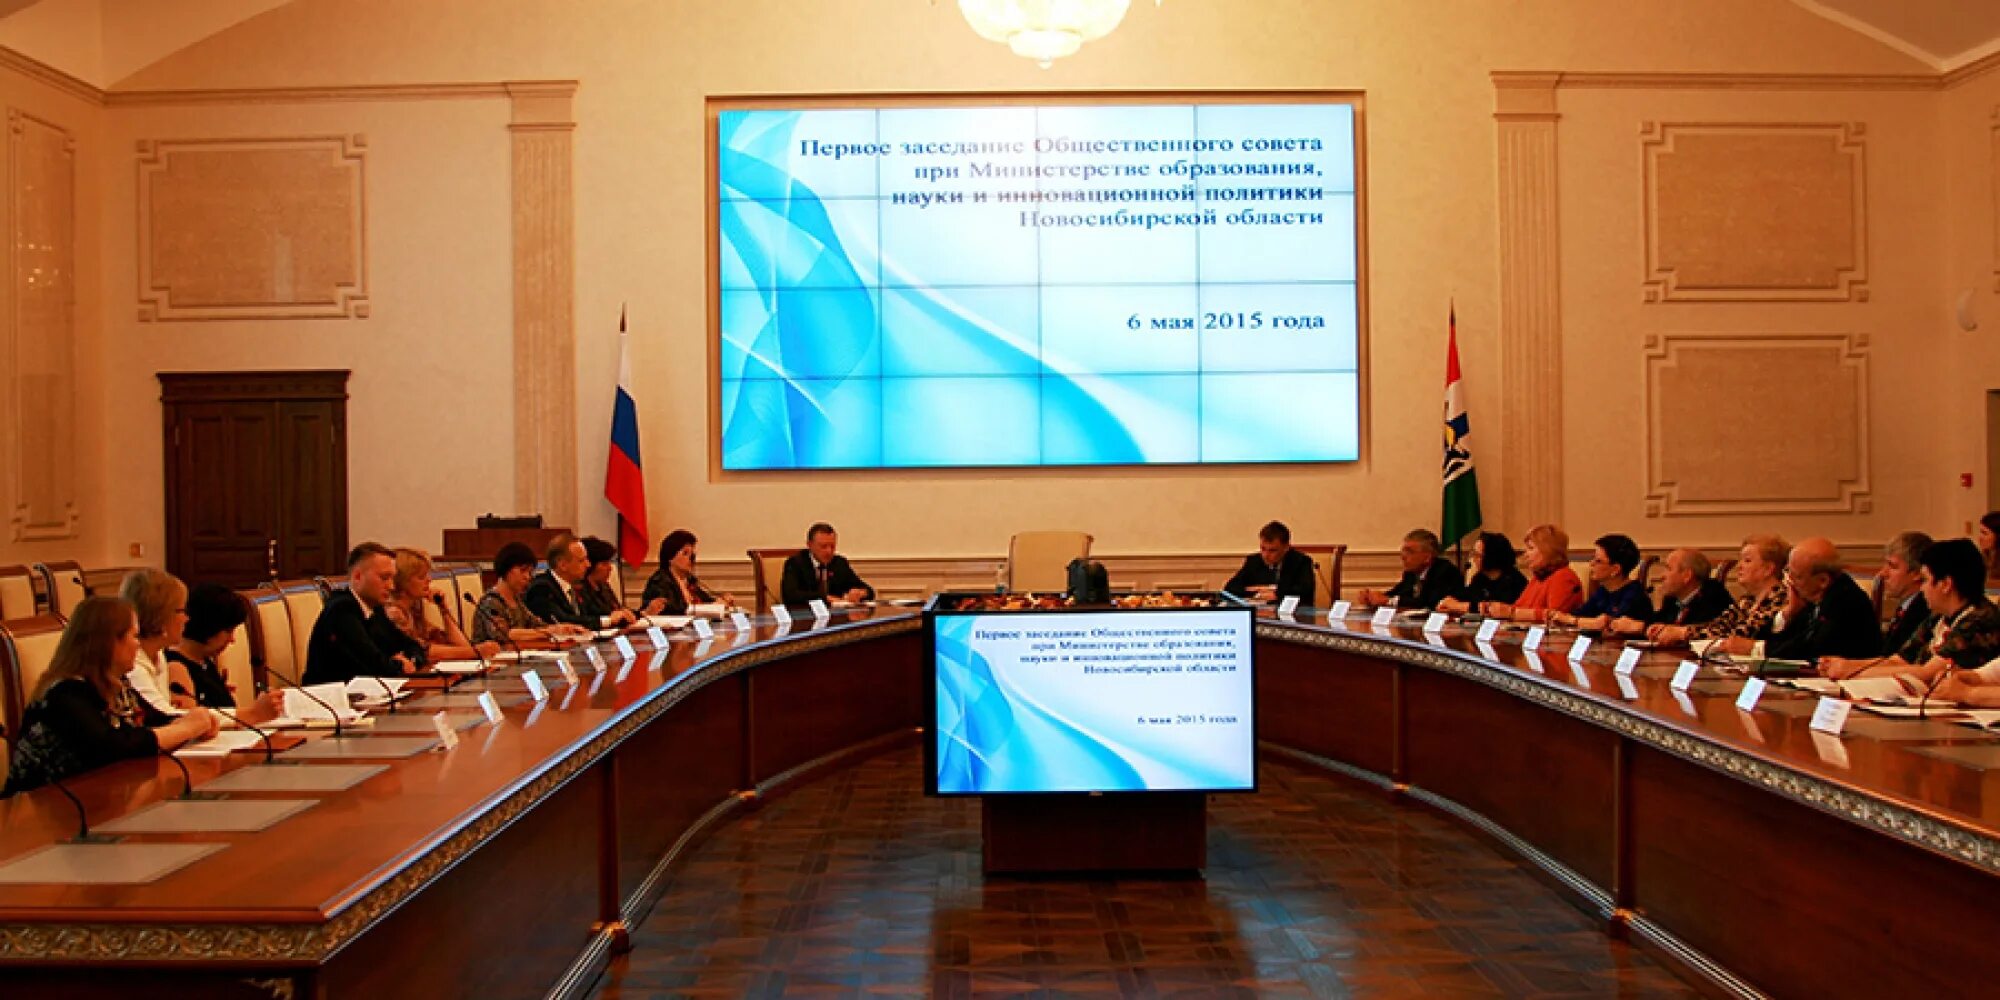 Общественный совет при министерстве образования новосибирской области